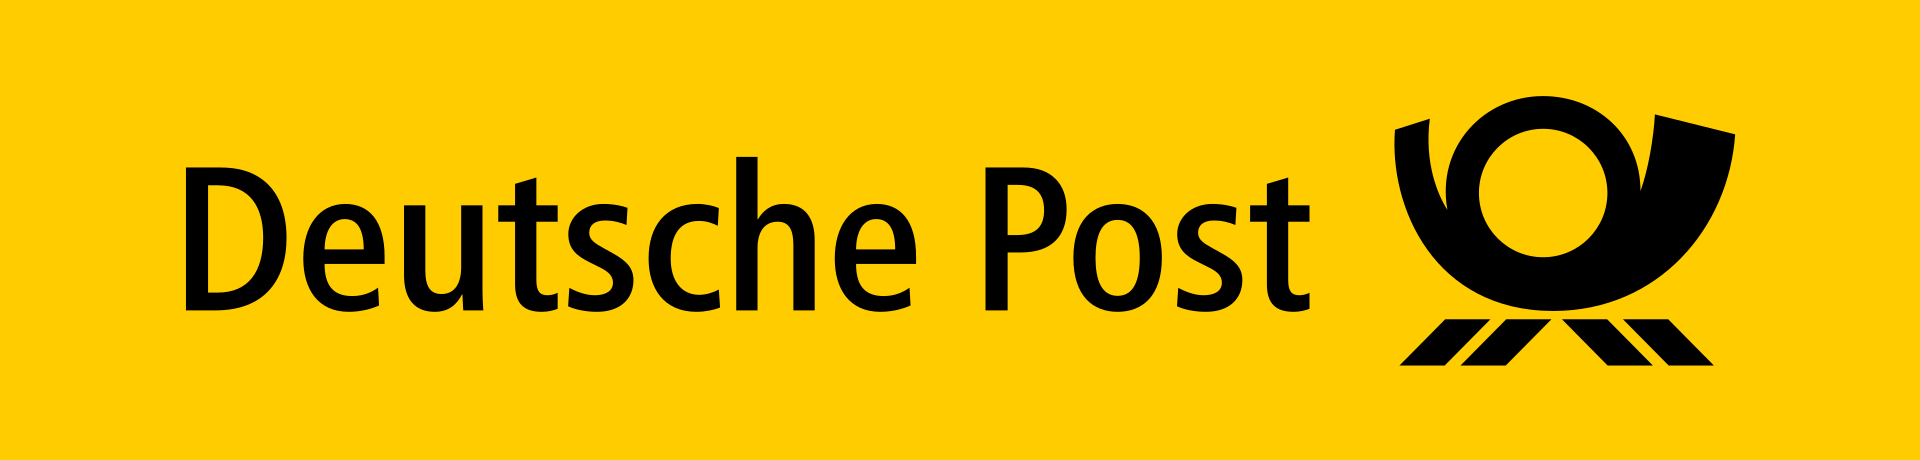 全球最大国际快递公司DHL母公司：德国邮政 Deutsche Post AG(DPSGY)